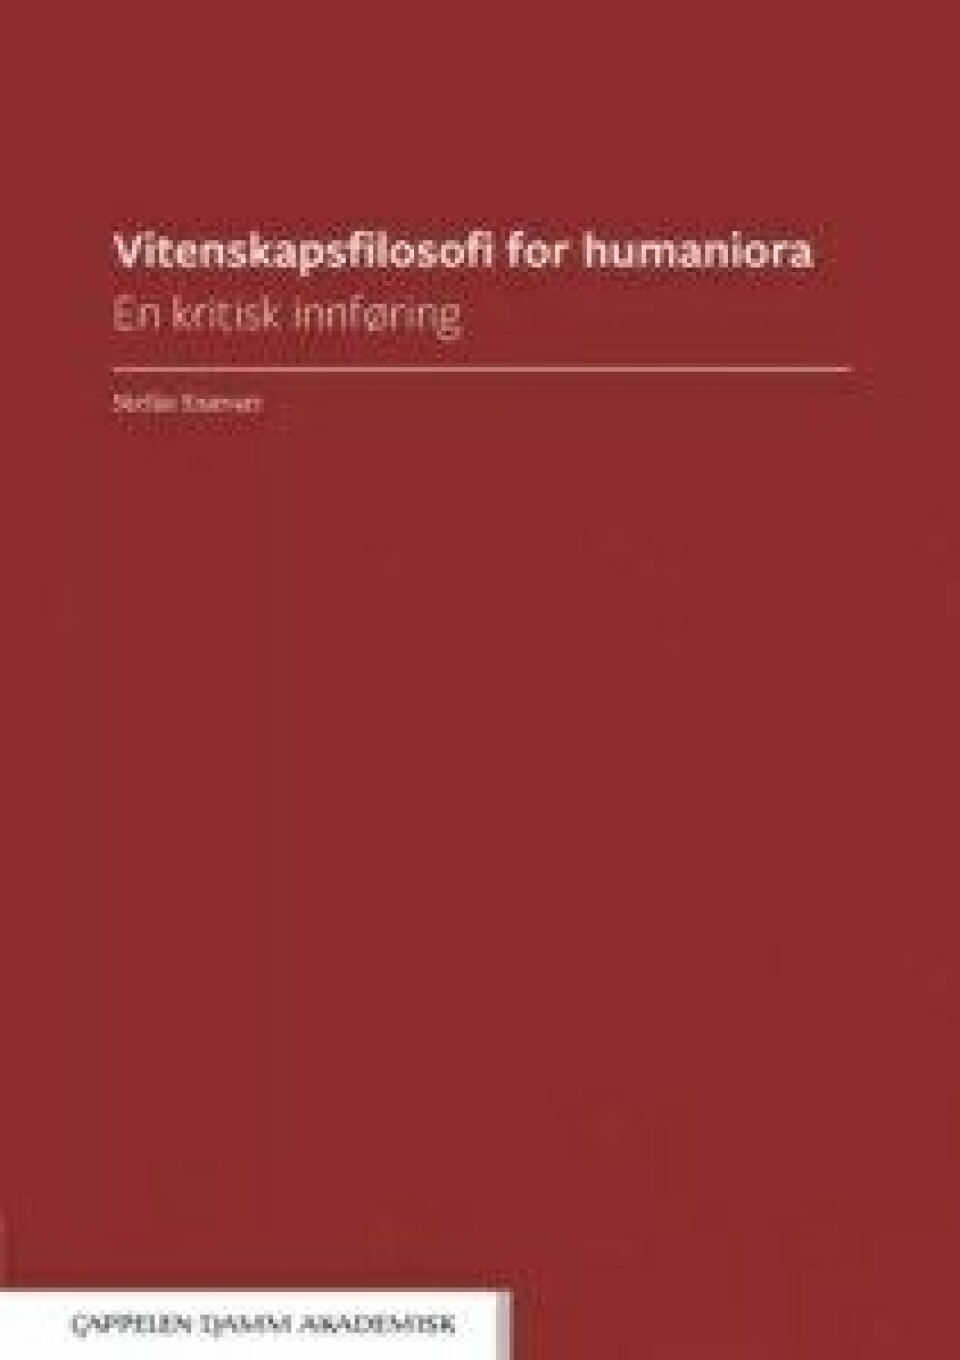 Vitenskapsfilosofi for humaniora: En kritisk innføring av Stefán Snævarr. Cappelen Damm, 2017.